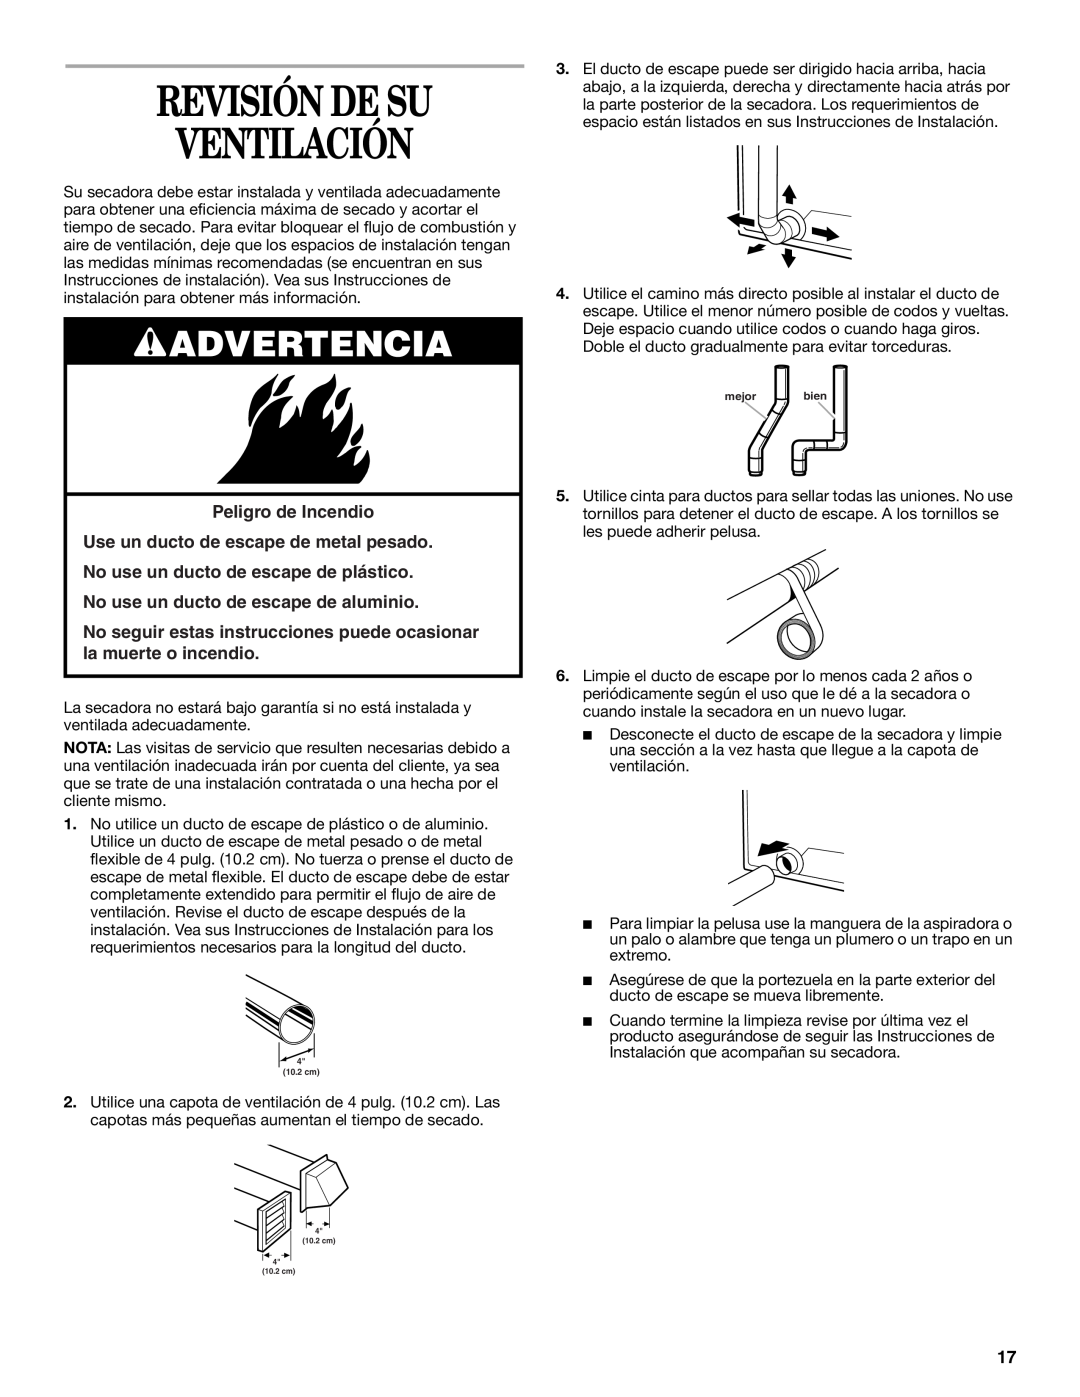 Whirlpool GCGM2991LQ0 manual Revisión De Su Ventilación, Peligro de Incendio 